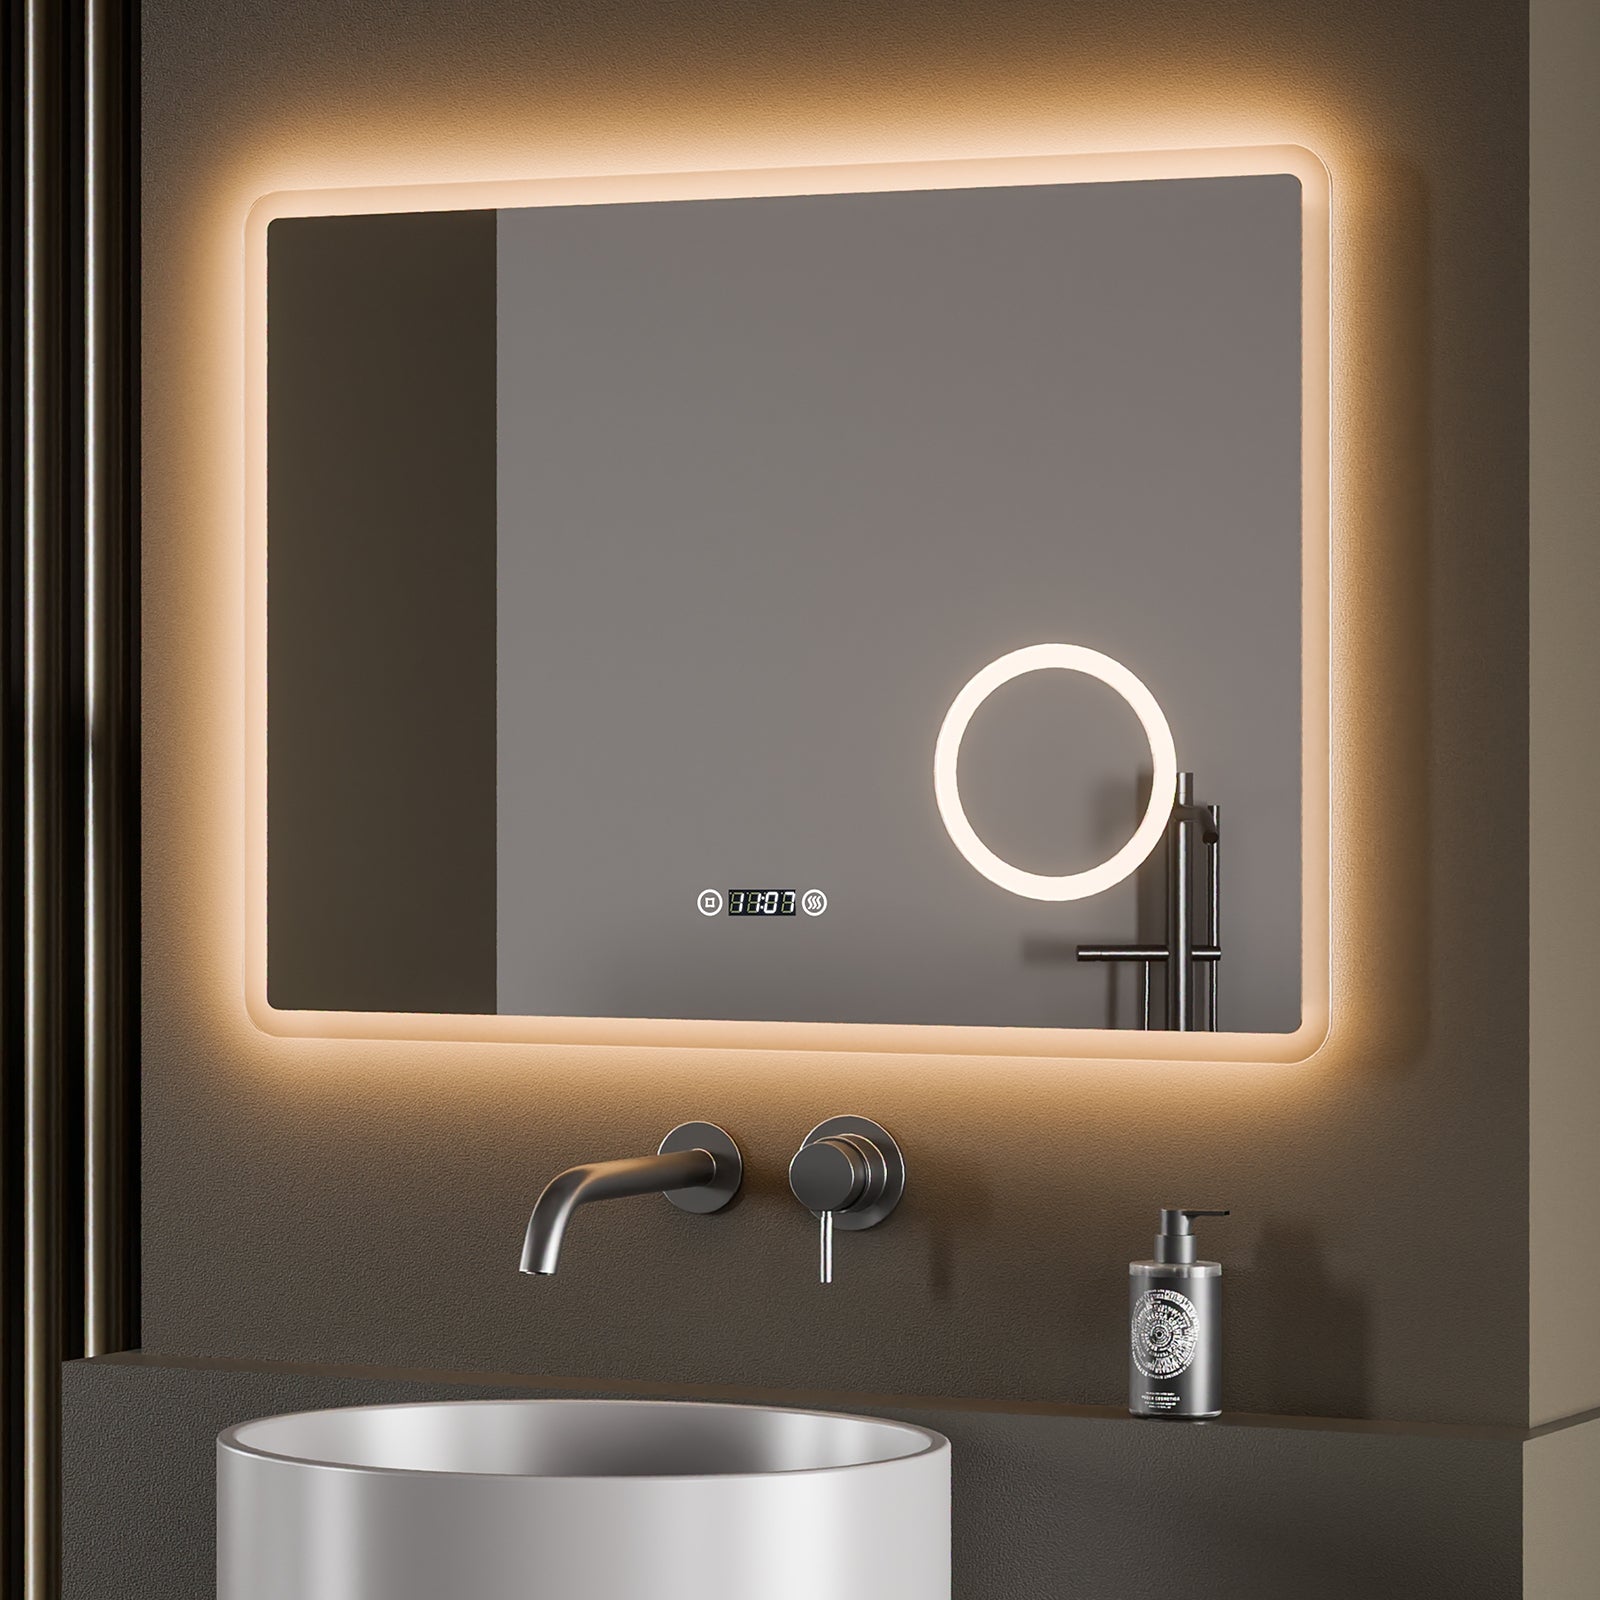 Entspannender Badspiegel mit Beleuchtung: 70 % der Haushalte entscheiden sich für klarere LED-Badspiegel anstelle gewöhnlicher Spiegel. Die komfortable Größe von 80 x 60 cm sorgt für genau die richtige Beleuchtung.. Praktischer Badezimmerspiegel: Der separate Antibeschlagschalter ermöglicht eine freiere Bedienung. Der praktische Spiegel mit Uhr lässt sich bequem über Antibeschlag-Knöpfe verstellen.. Schlaue 3-in-1-Touch: Mit dem SmartTouch 3.0 des EMKE Badezimmerspiegels können Schalter + 3 Lichtfarben + Dimmen mit einem 'Touch' erreicht werden